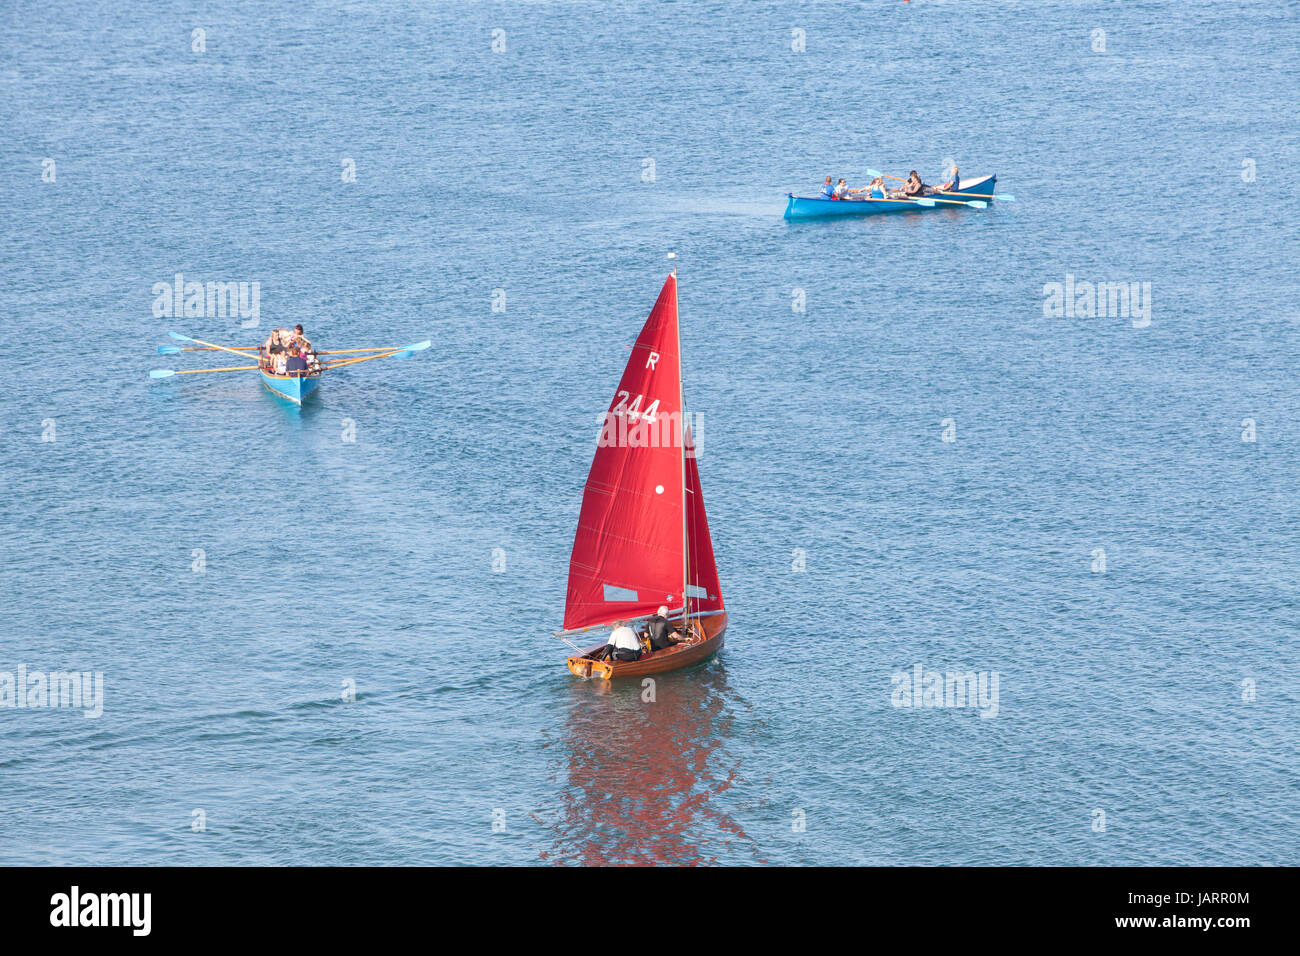 Eine Jolle mit einem roten Segel und zwei Piloten Gigs ab Looe, Cornwall Stockfoto